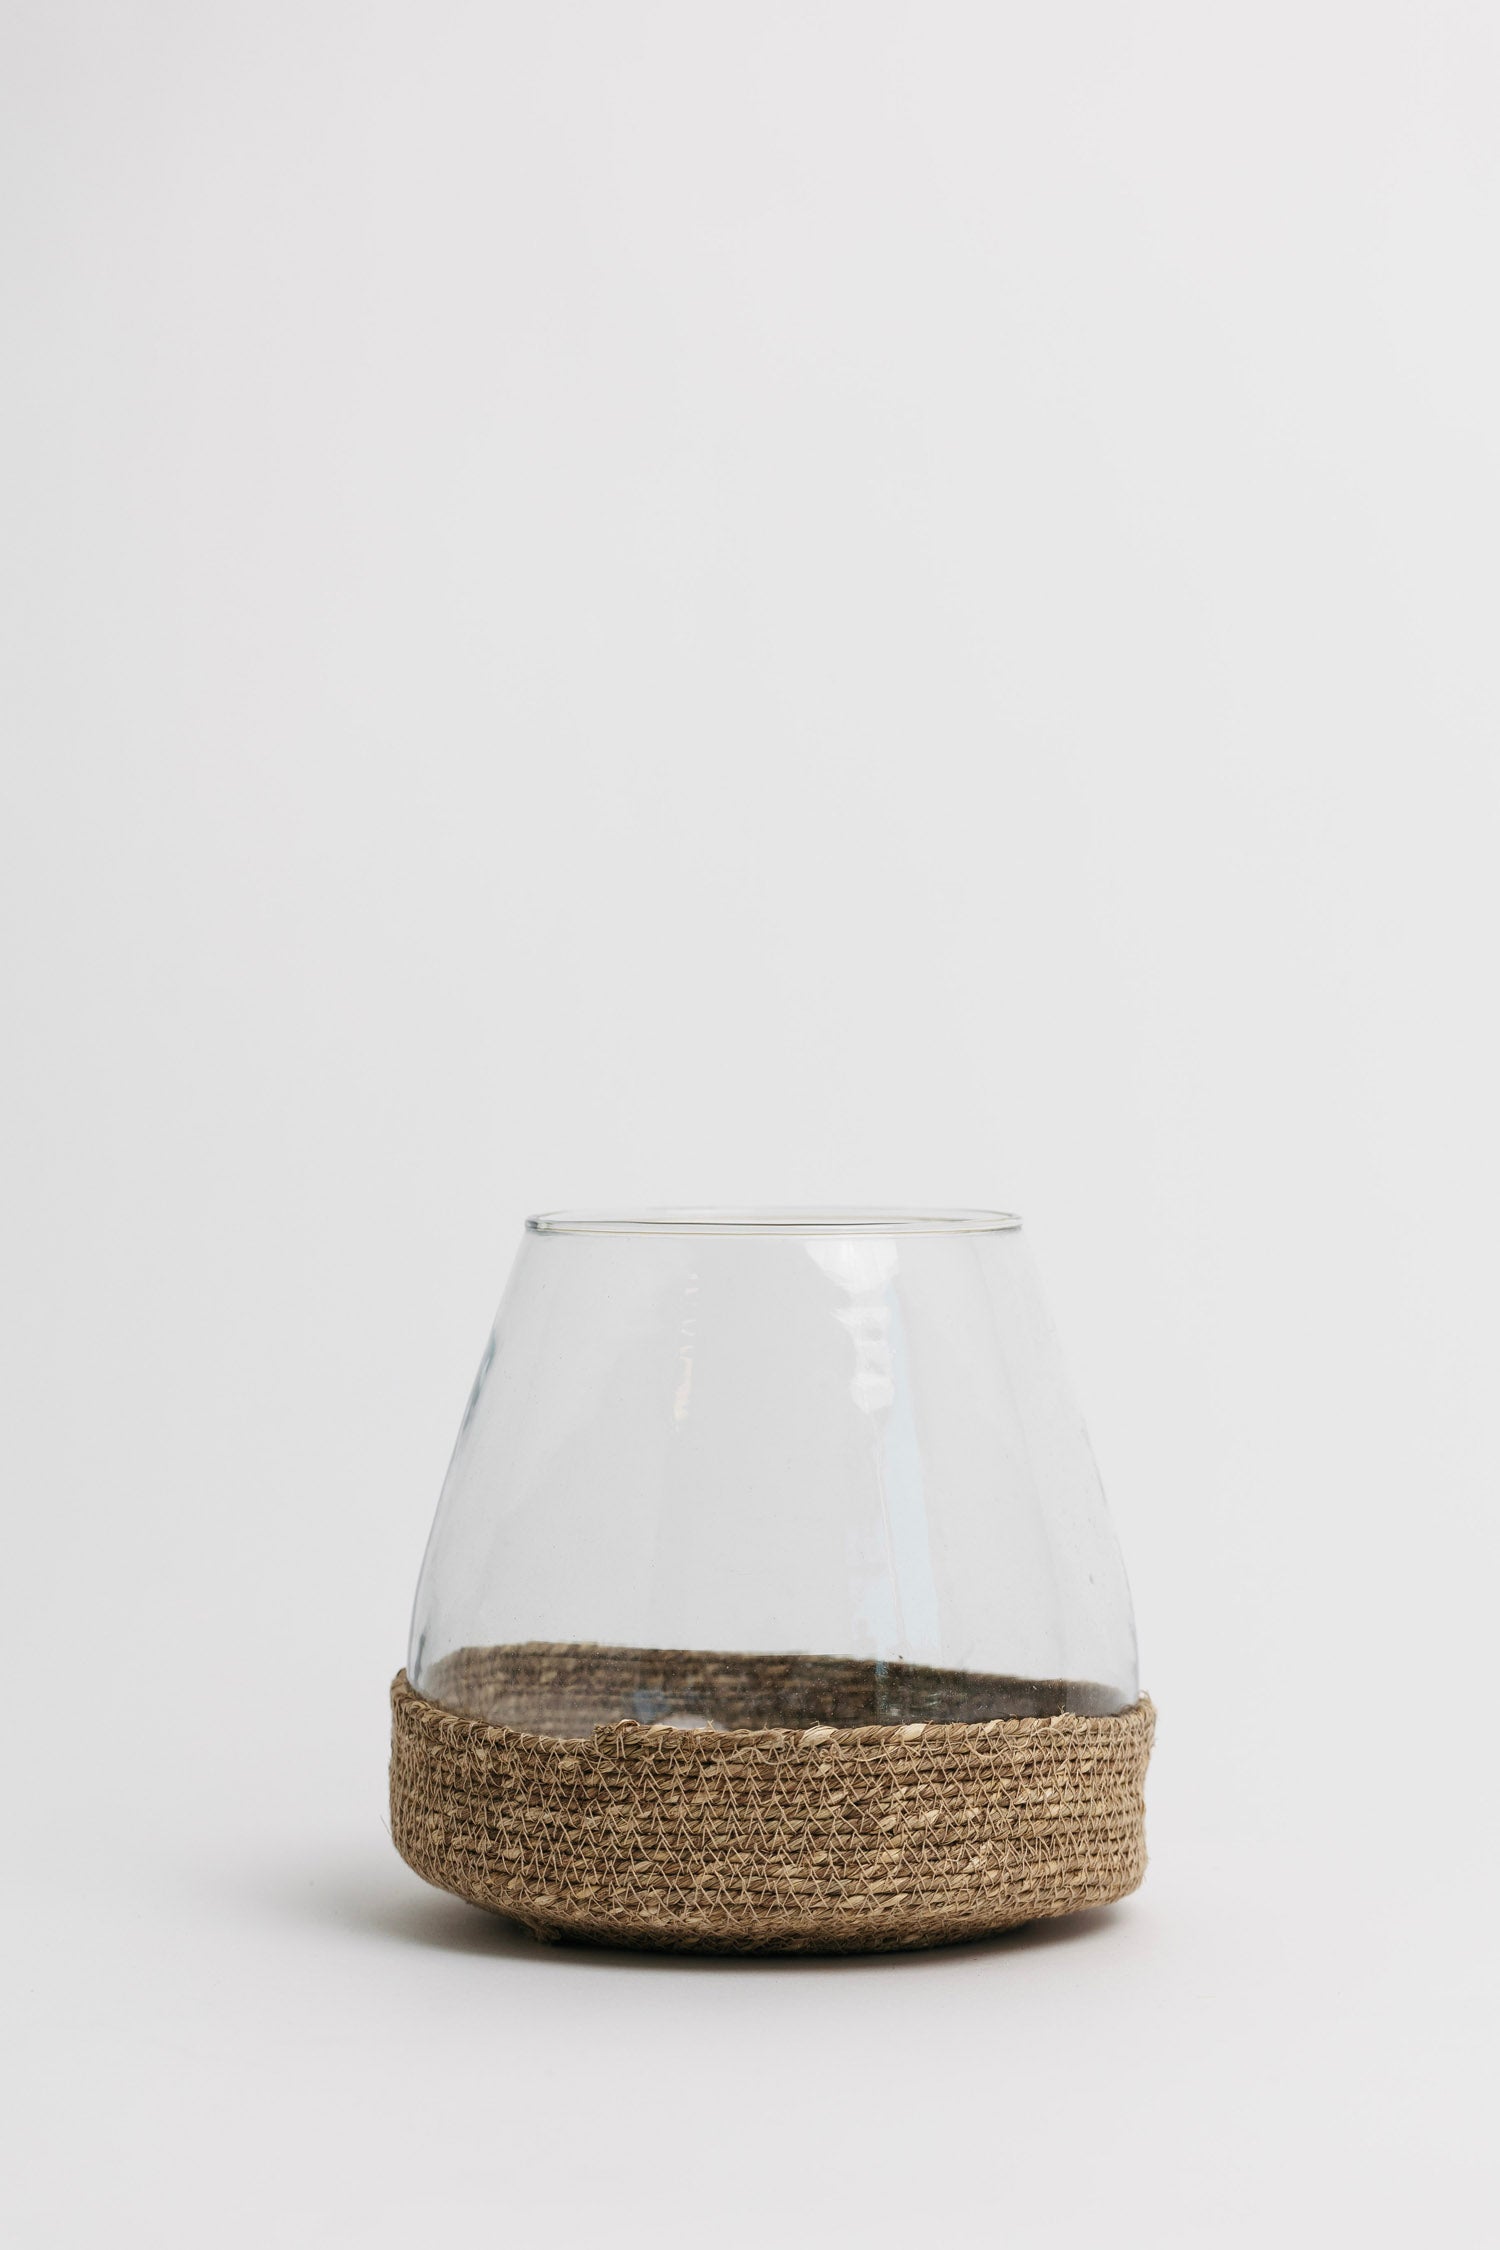 Brava Glass + Woven Jute Vase